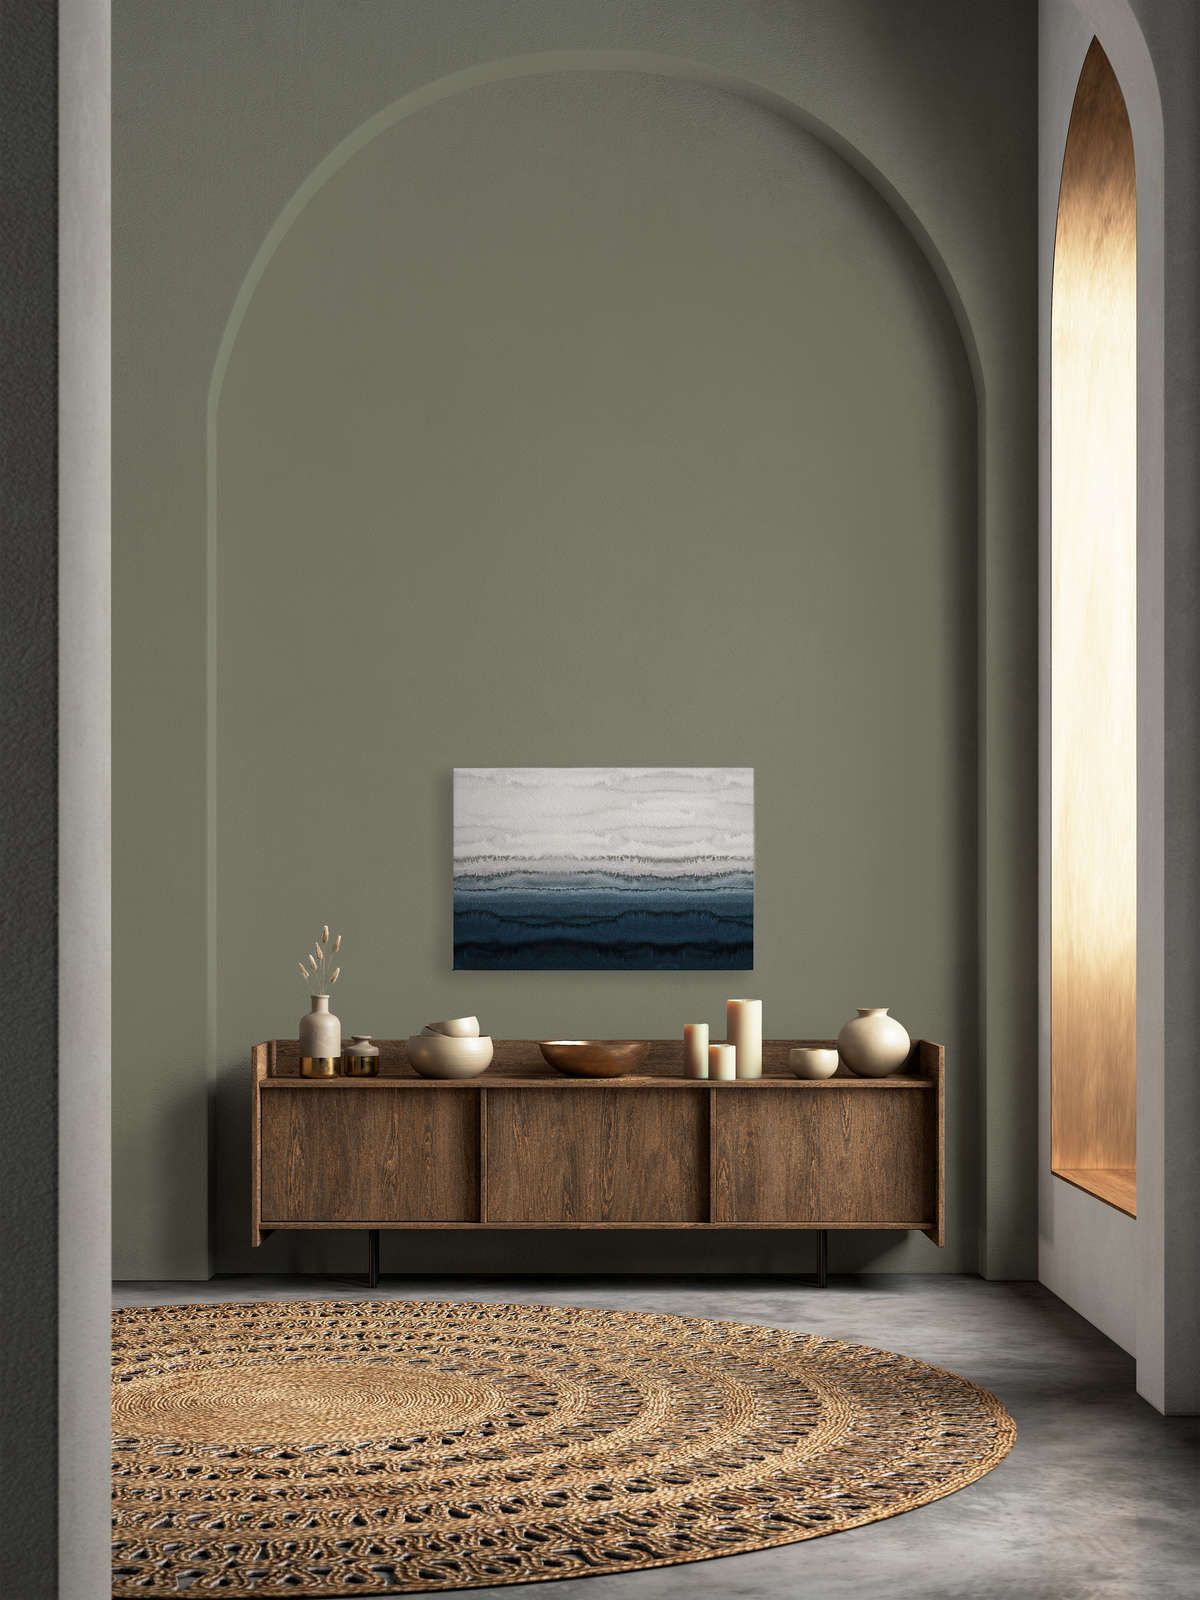             Leinwandbild Gezeiten im minimalistischen Aquarell Stil – 0,90 m x 0,60 m
        